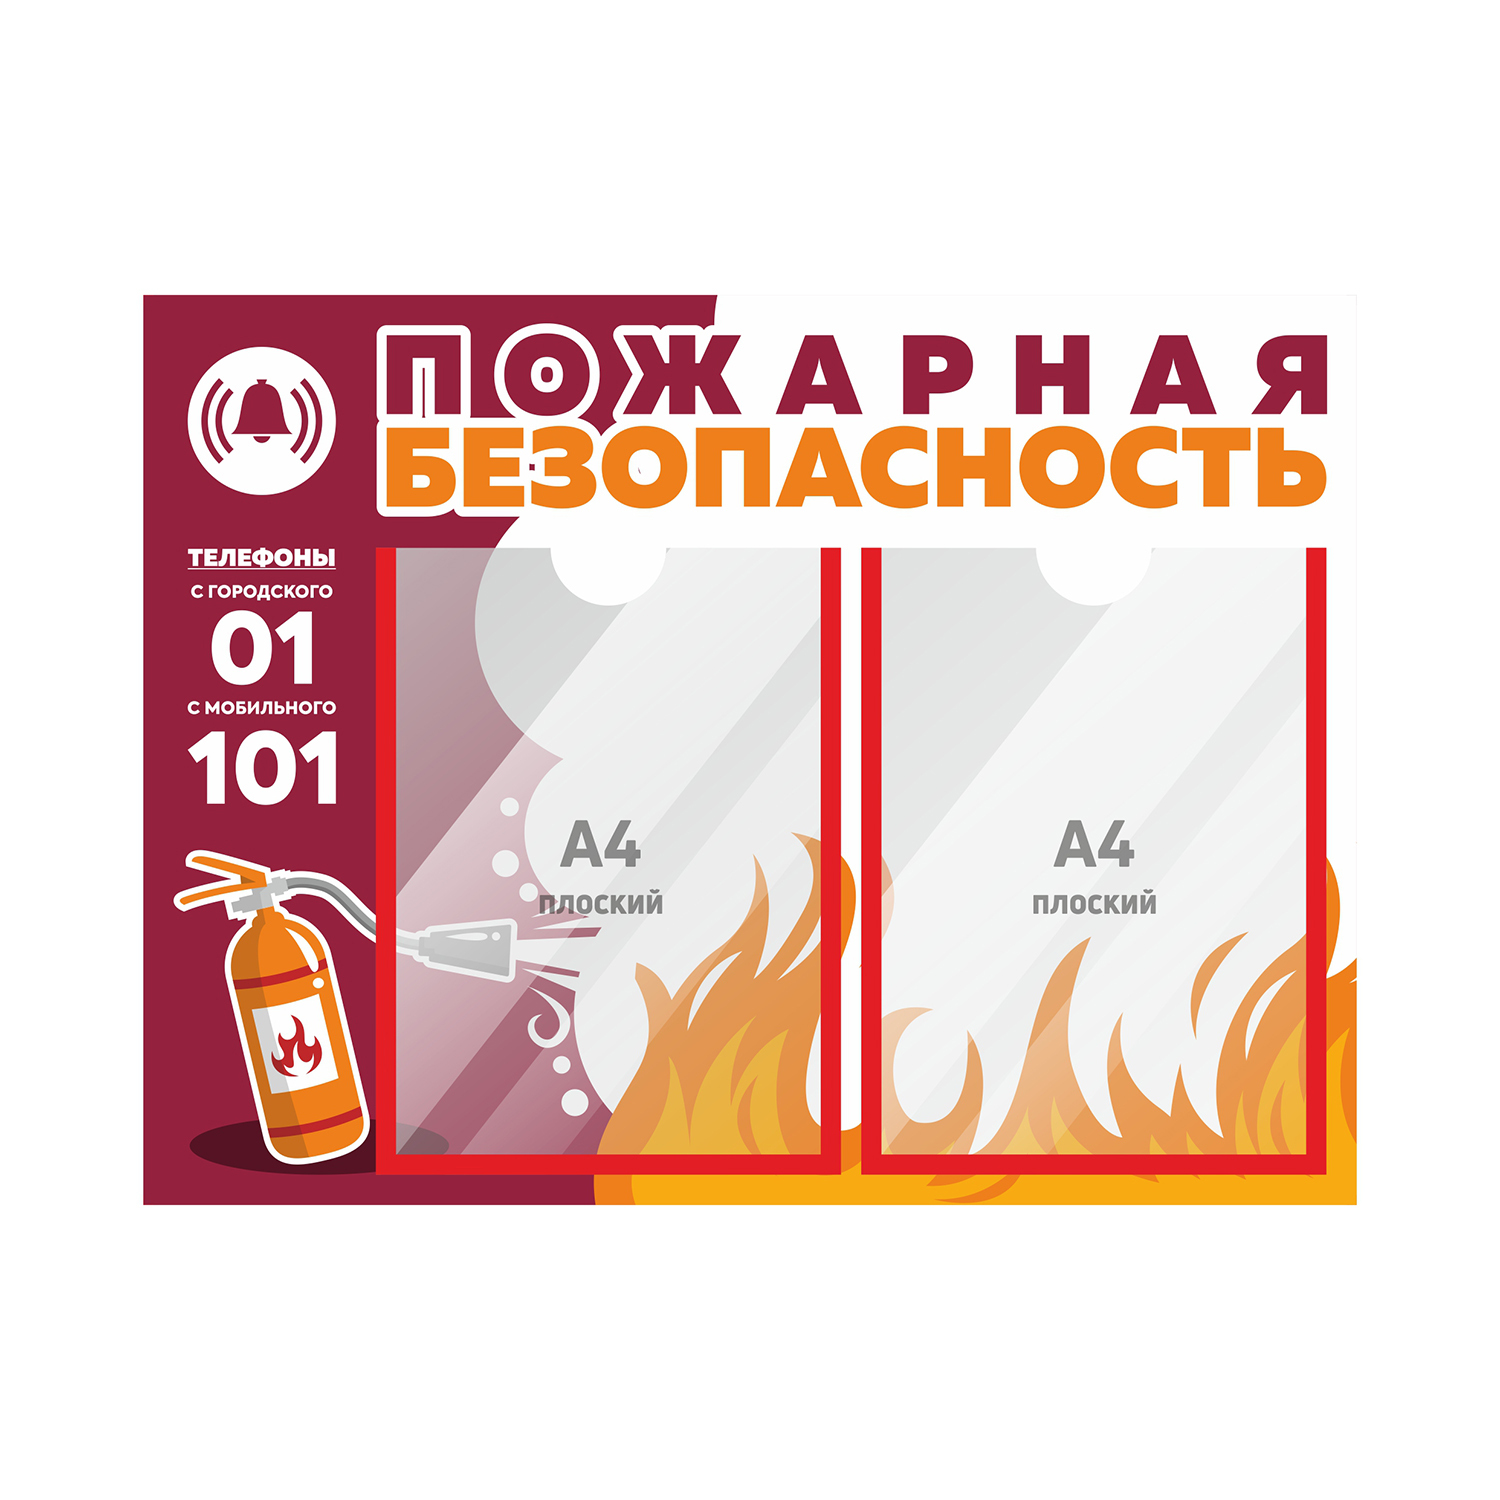 Стендинформационный"Пожарнаябезопасность"№3,600х450мм,ПВХ3мм,Печатник